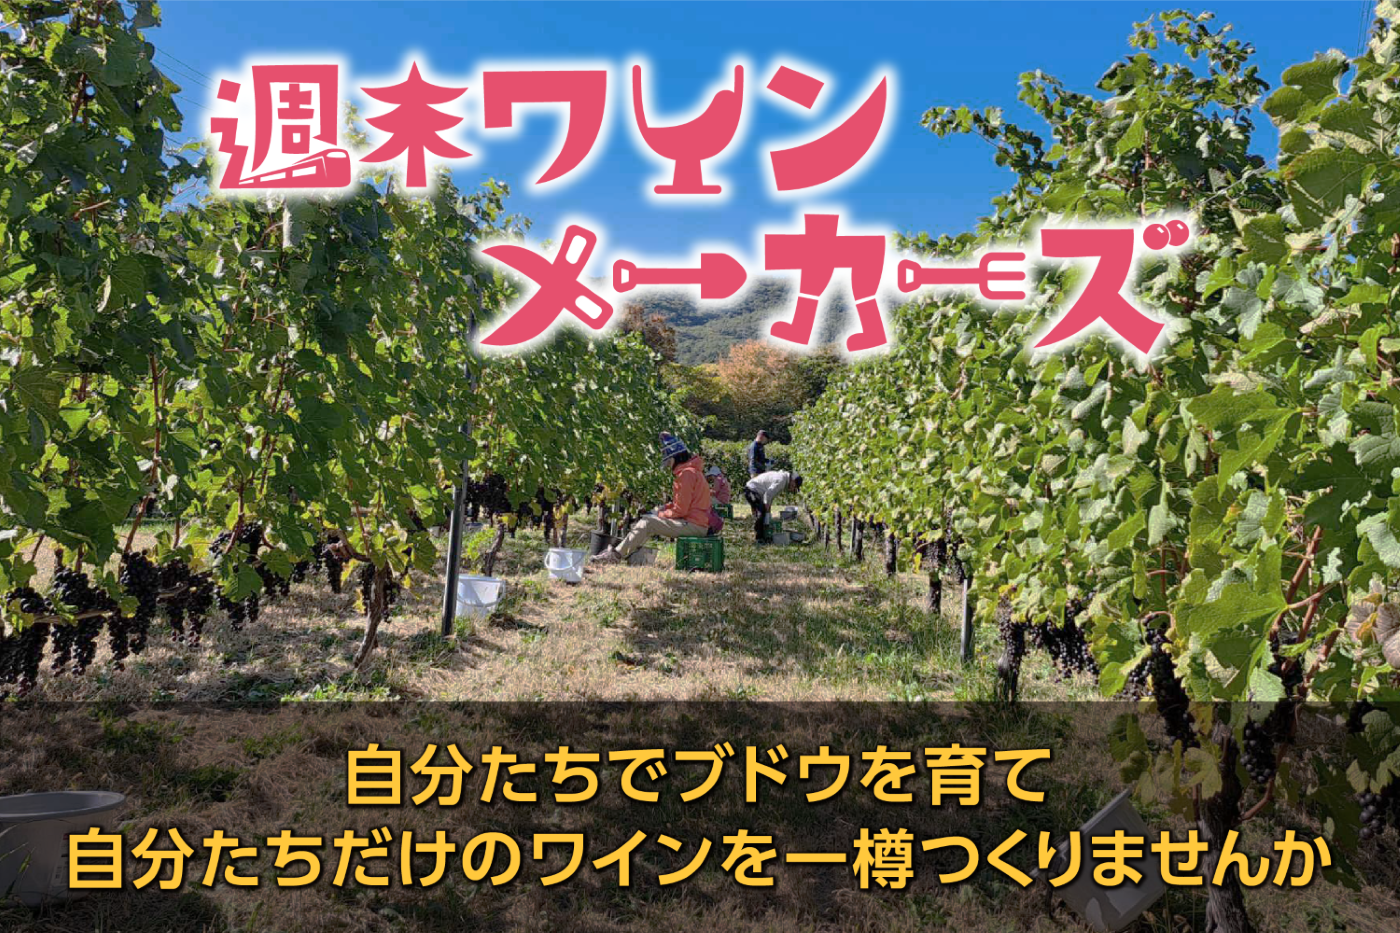 日本のジビエを牽引する【宇佐ジビエファクトリー】の活動が
『全国農業新聞』に31日掲載。